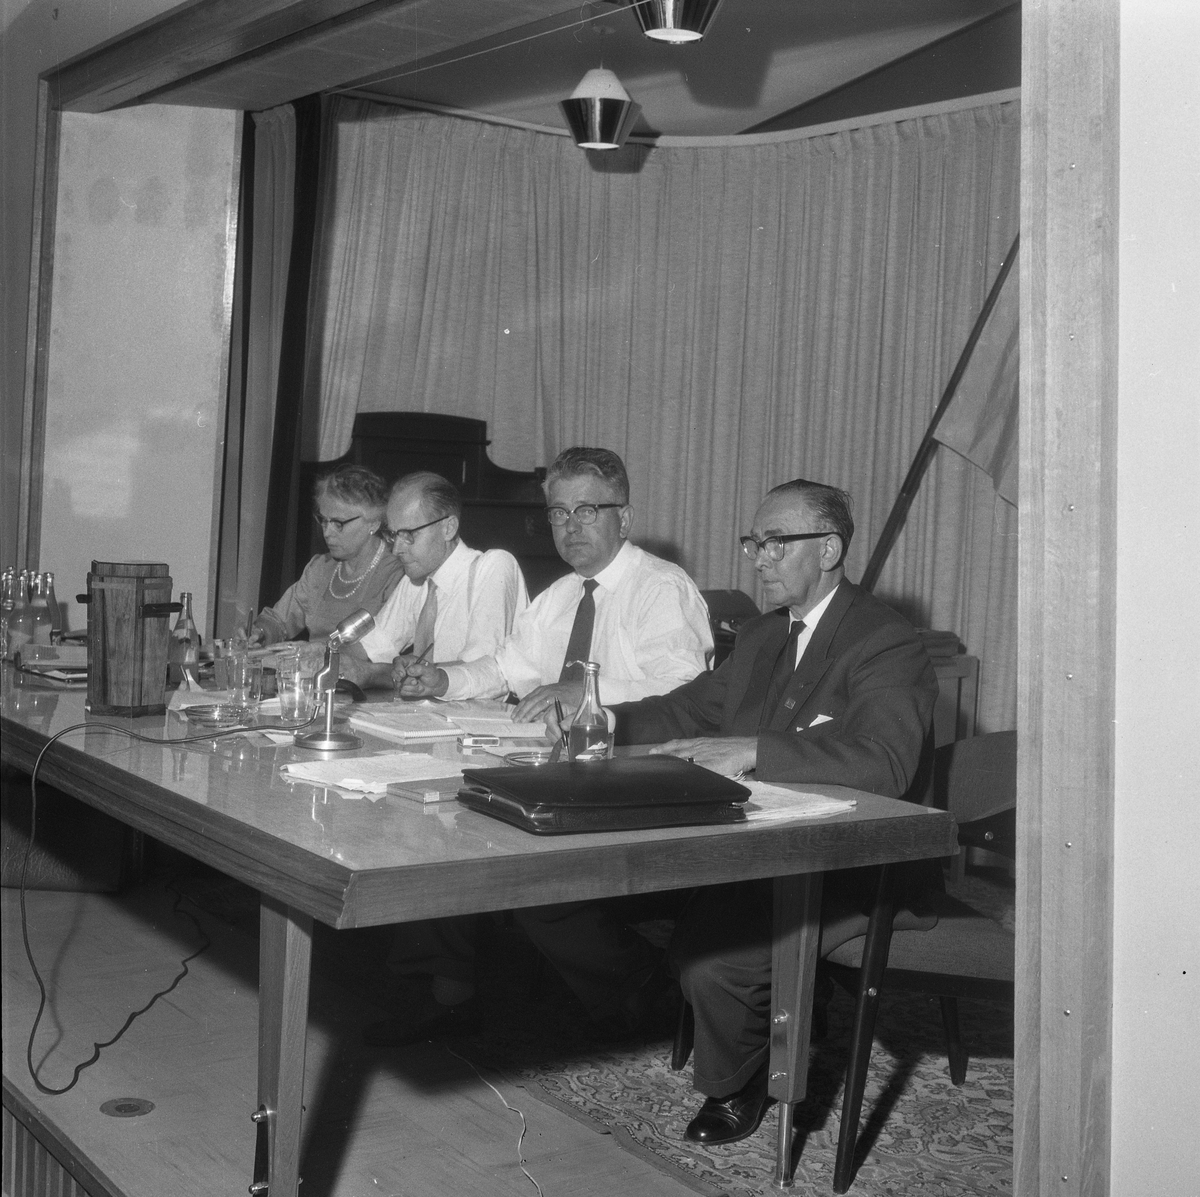 Skomakarmästarna debatterade höjda priser på skosulningar. 
14 juli 1959.